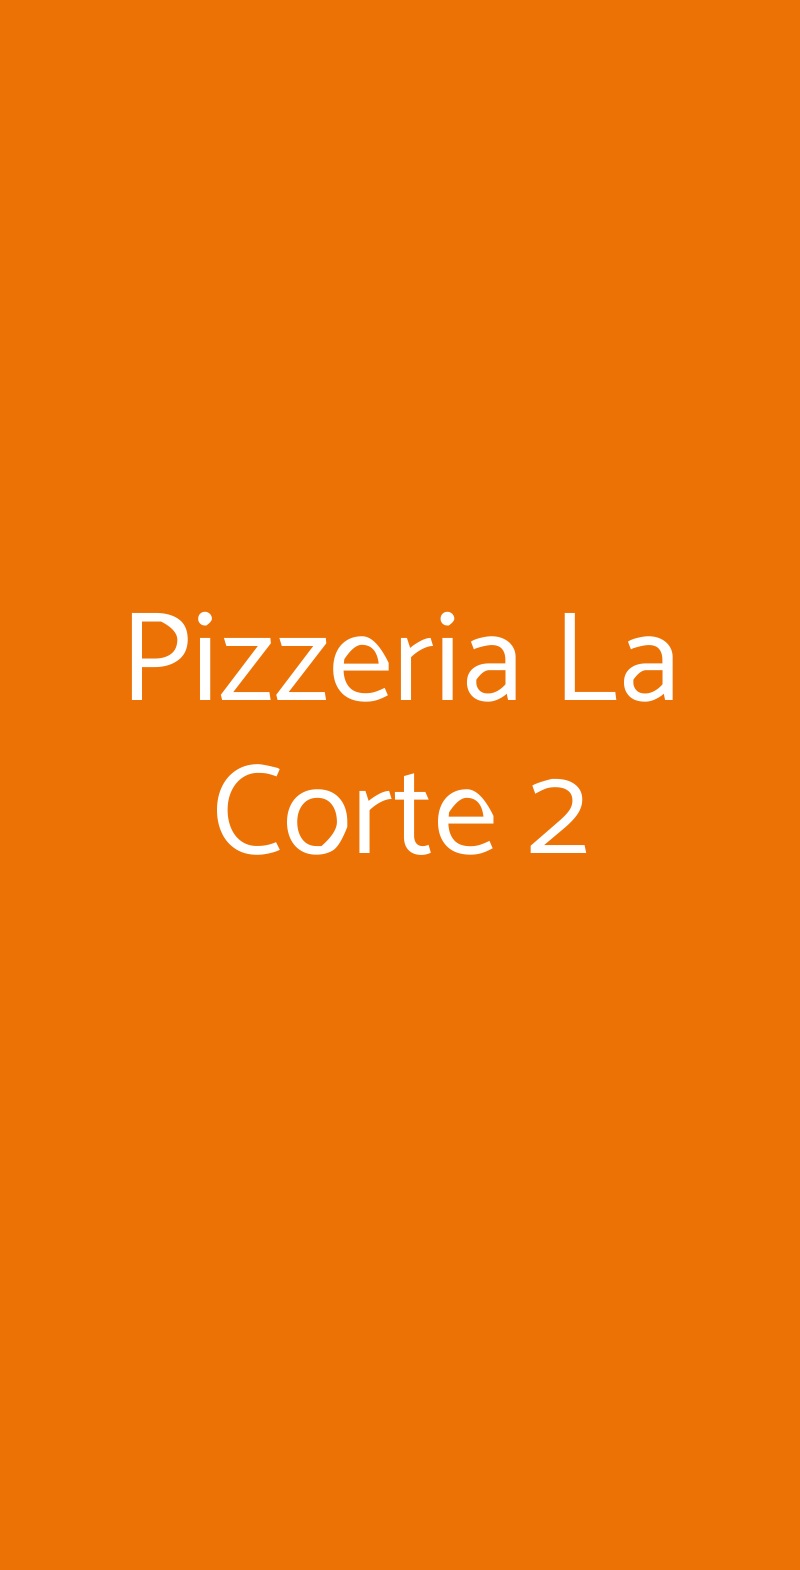 Pizzeria La Corte 2 Milano menù 1 pagina